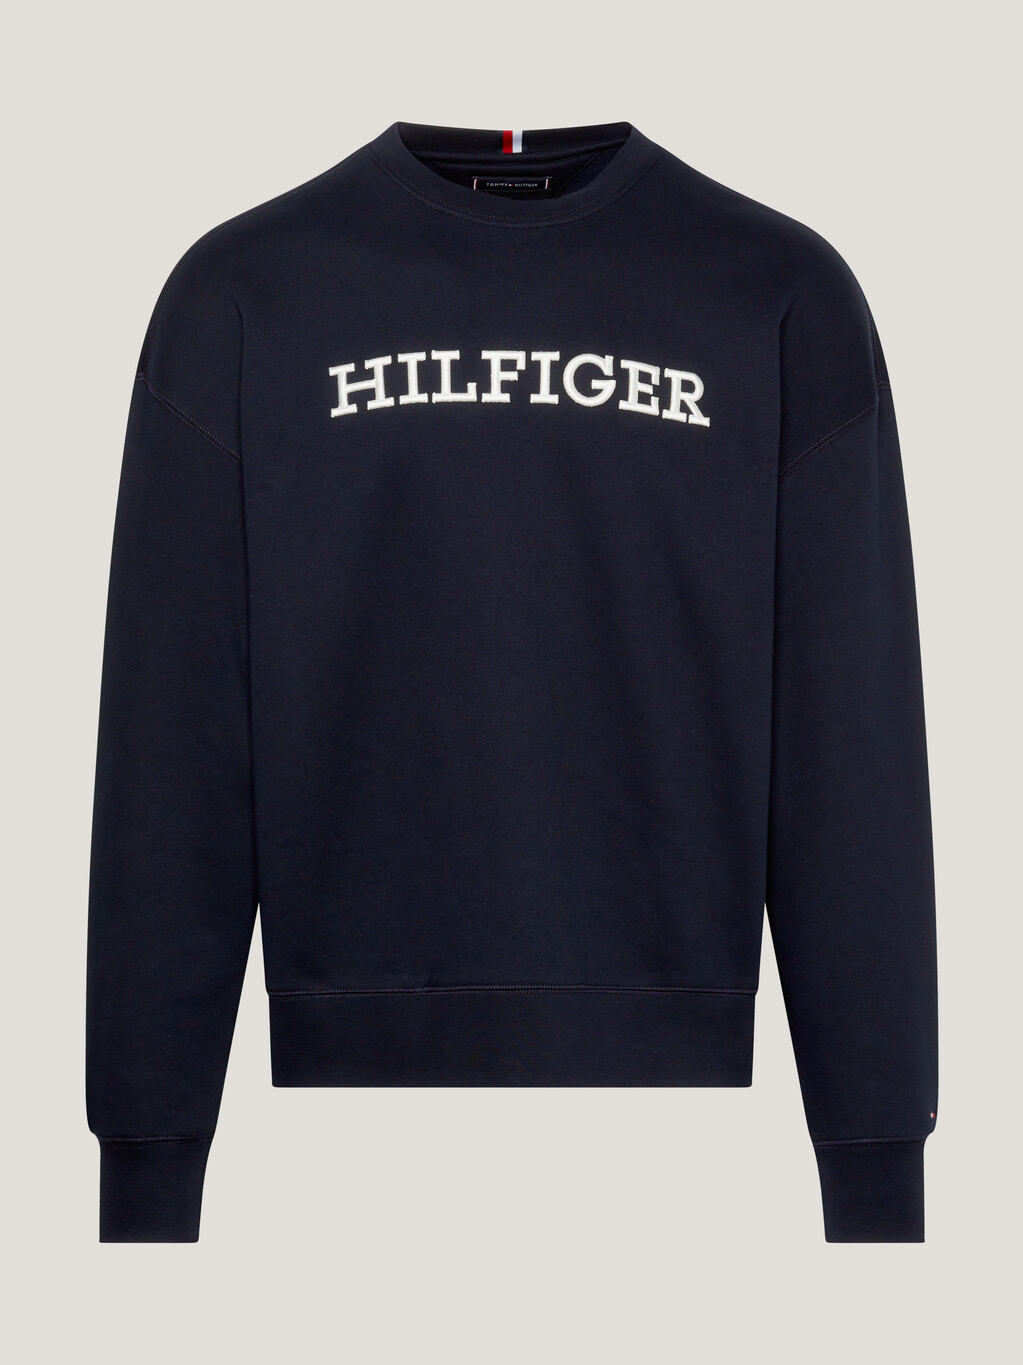 Hilfiger Monotype 經典版型運動衫, Desert Sky, hi-res